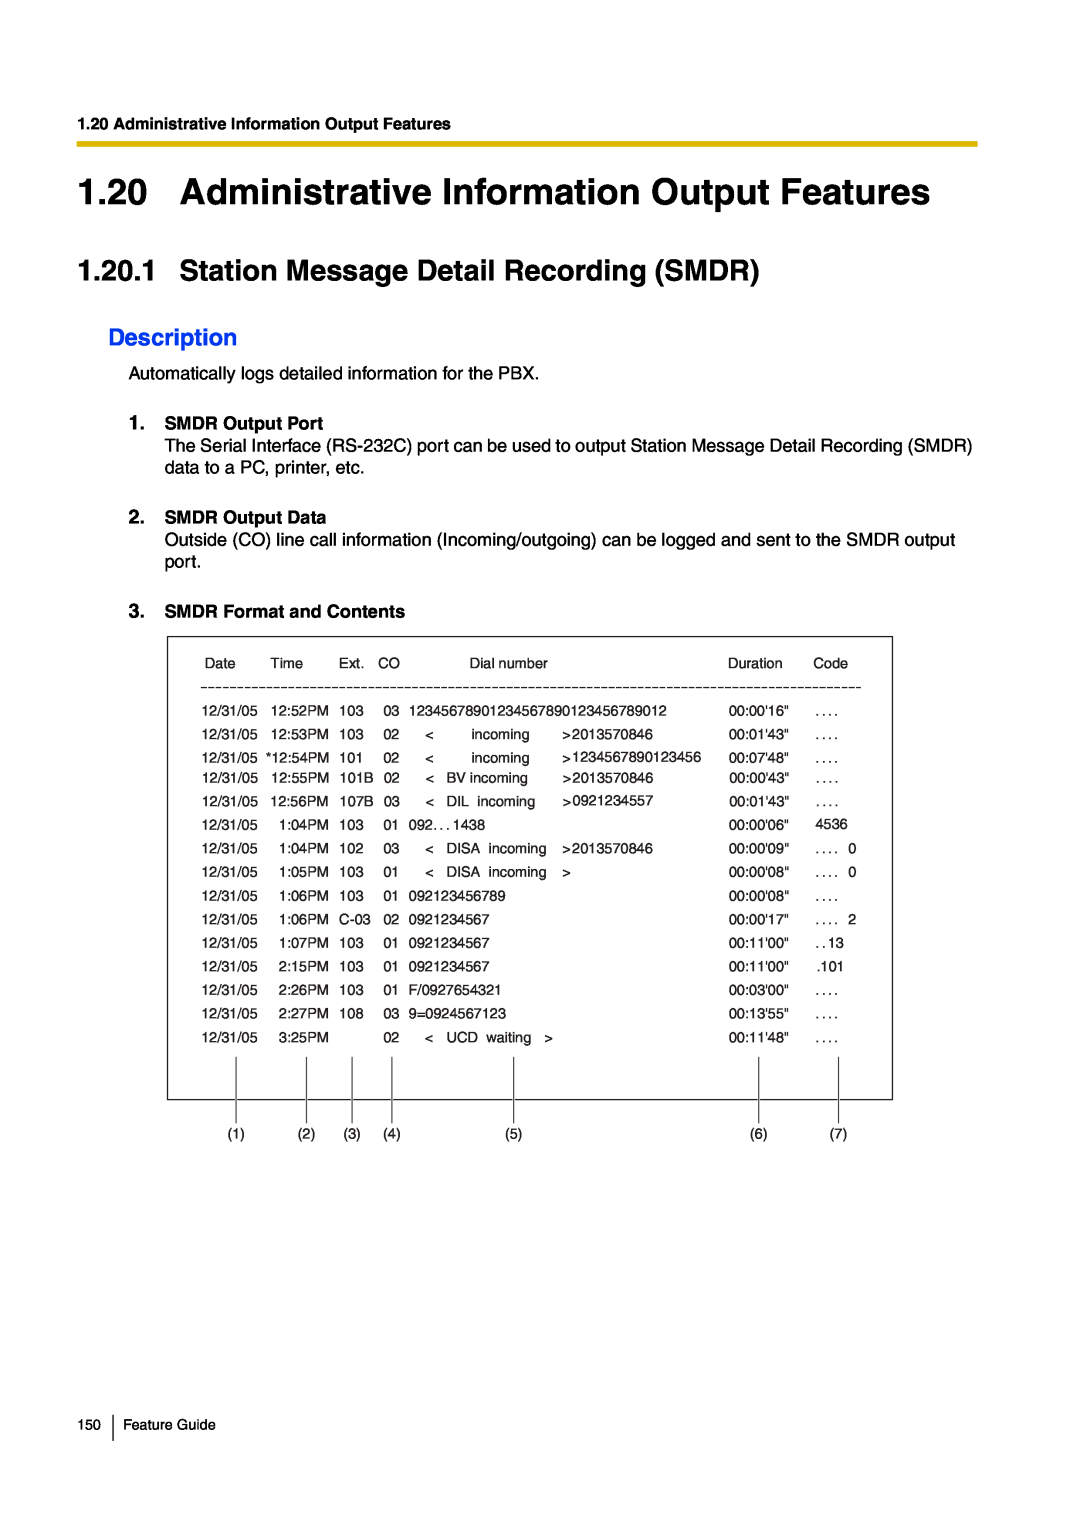 Panasonic kx-tea308 manual Administrative Information Output Features, Station Message Detail Recording SMDR, Description 